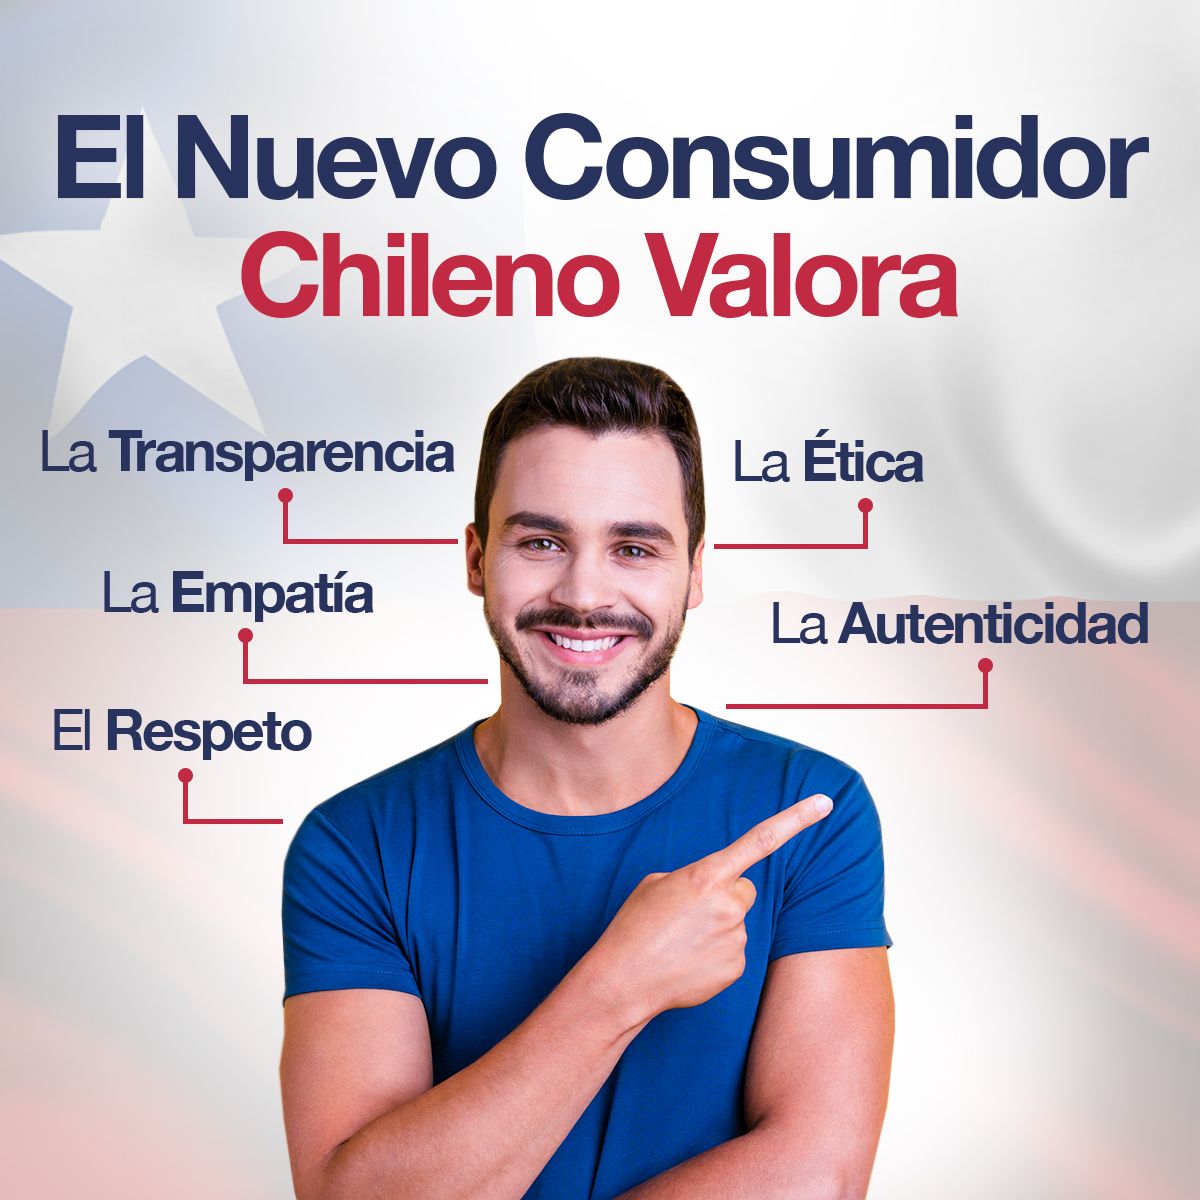 El Nuevo Consumidor Chileno Valora